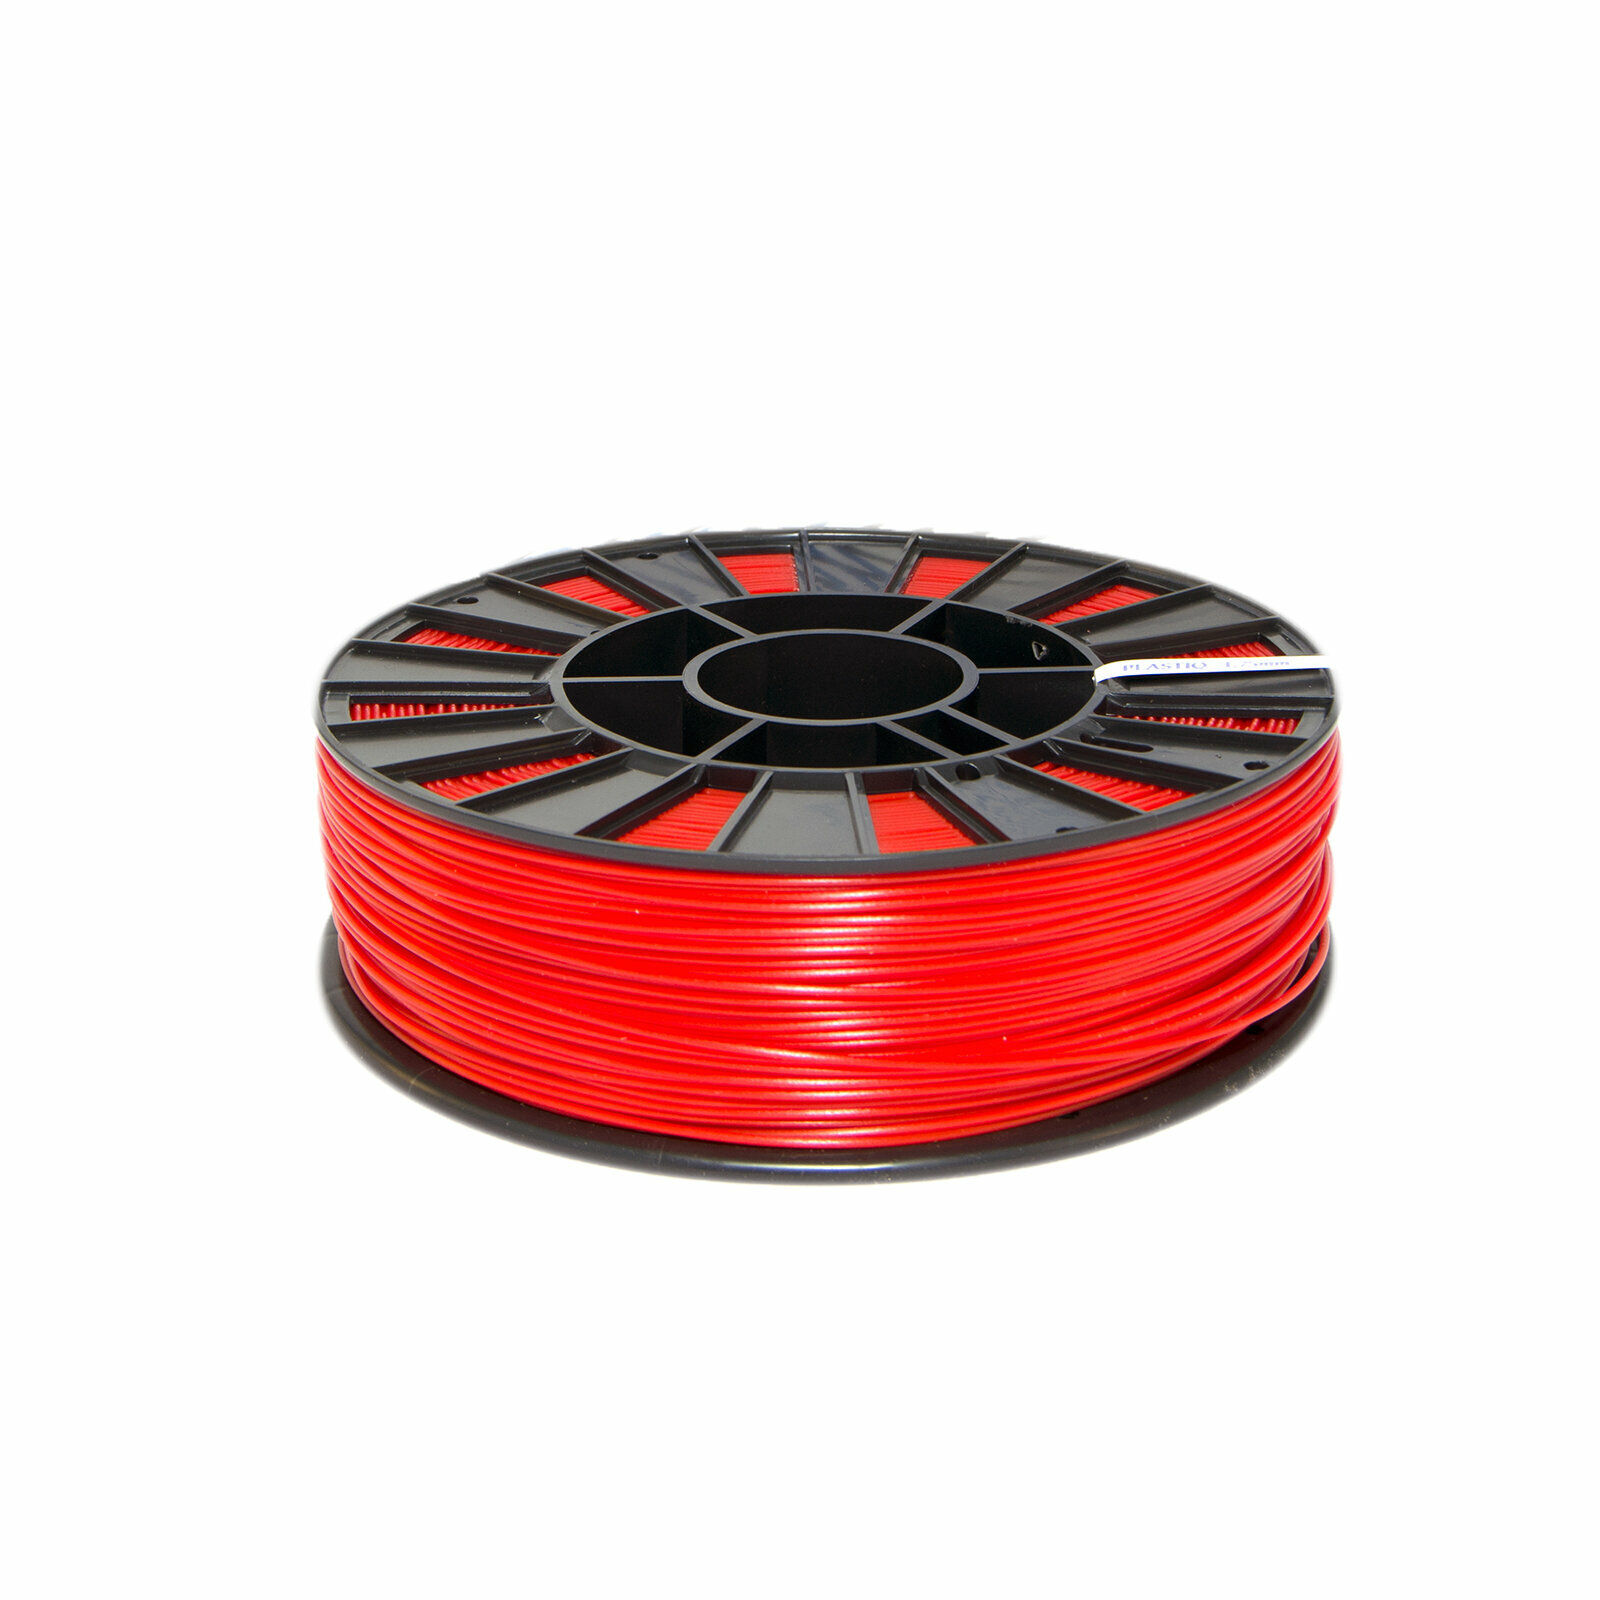 Пластик PLA для 3D принтера Красный Dewang, 1.75мм, 320 метров